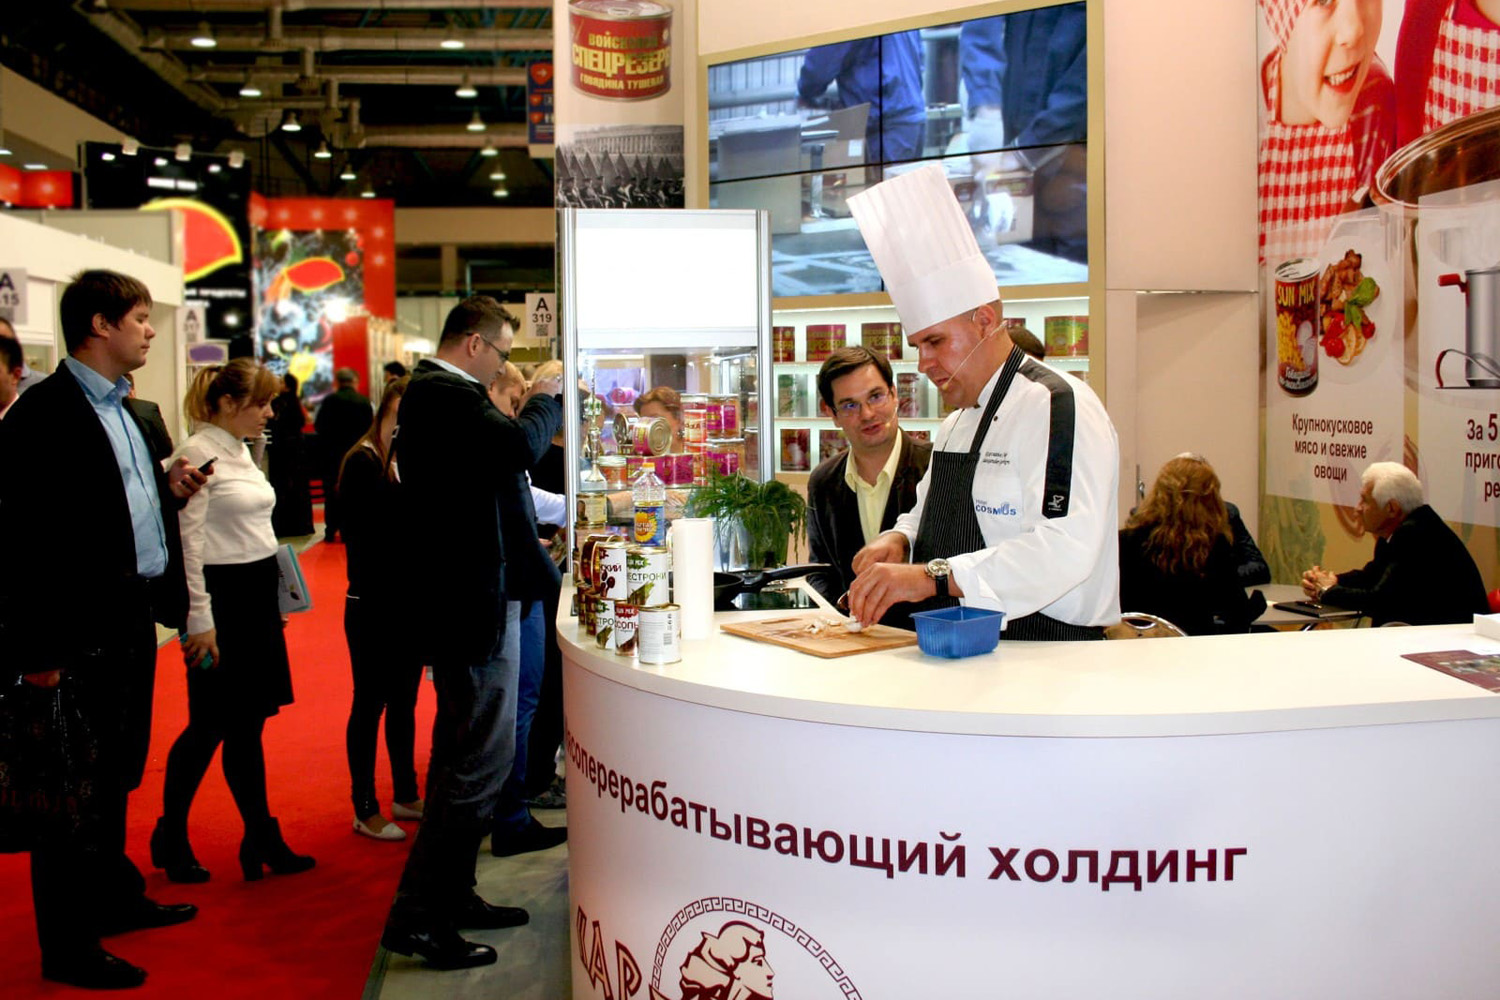 Мясоперерабатывающий холдинг АРГО представил уникальные мясные консервы на выставке World Food Moscow 2014